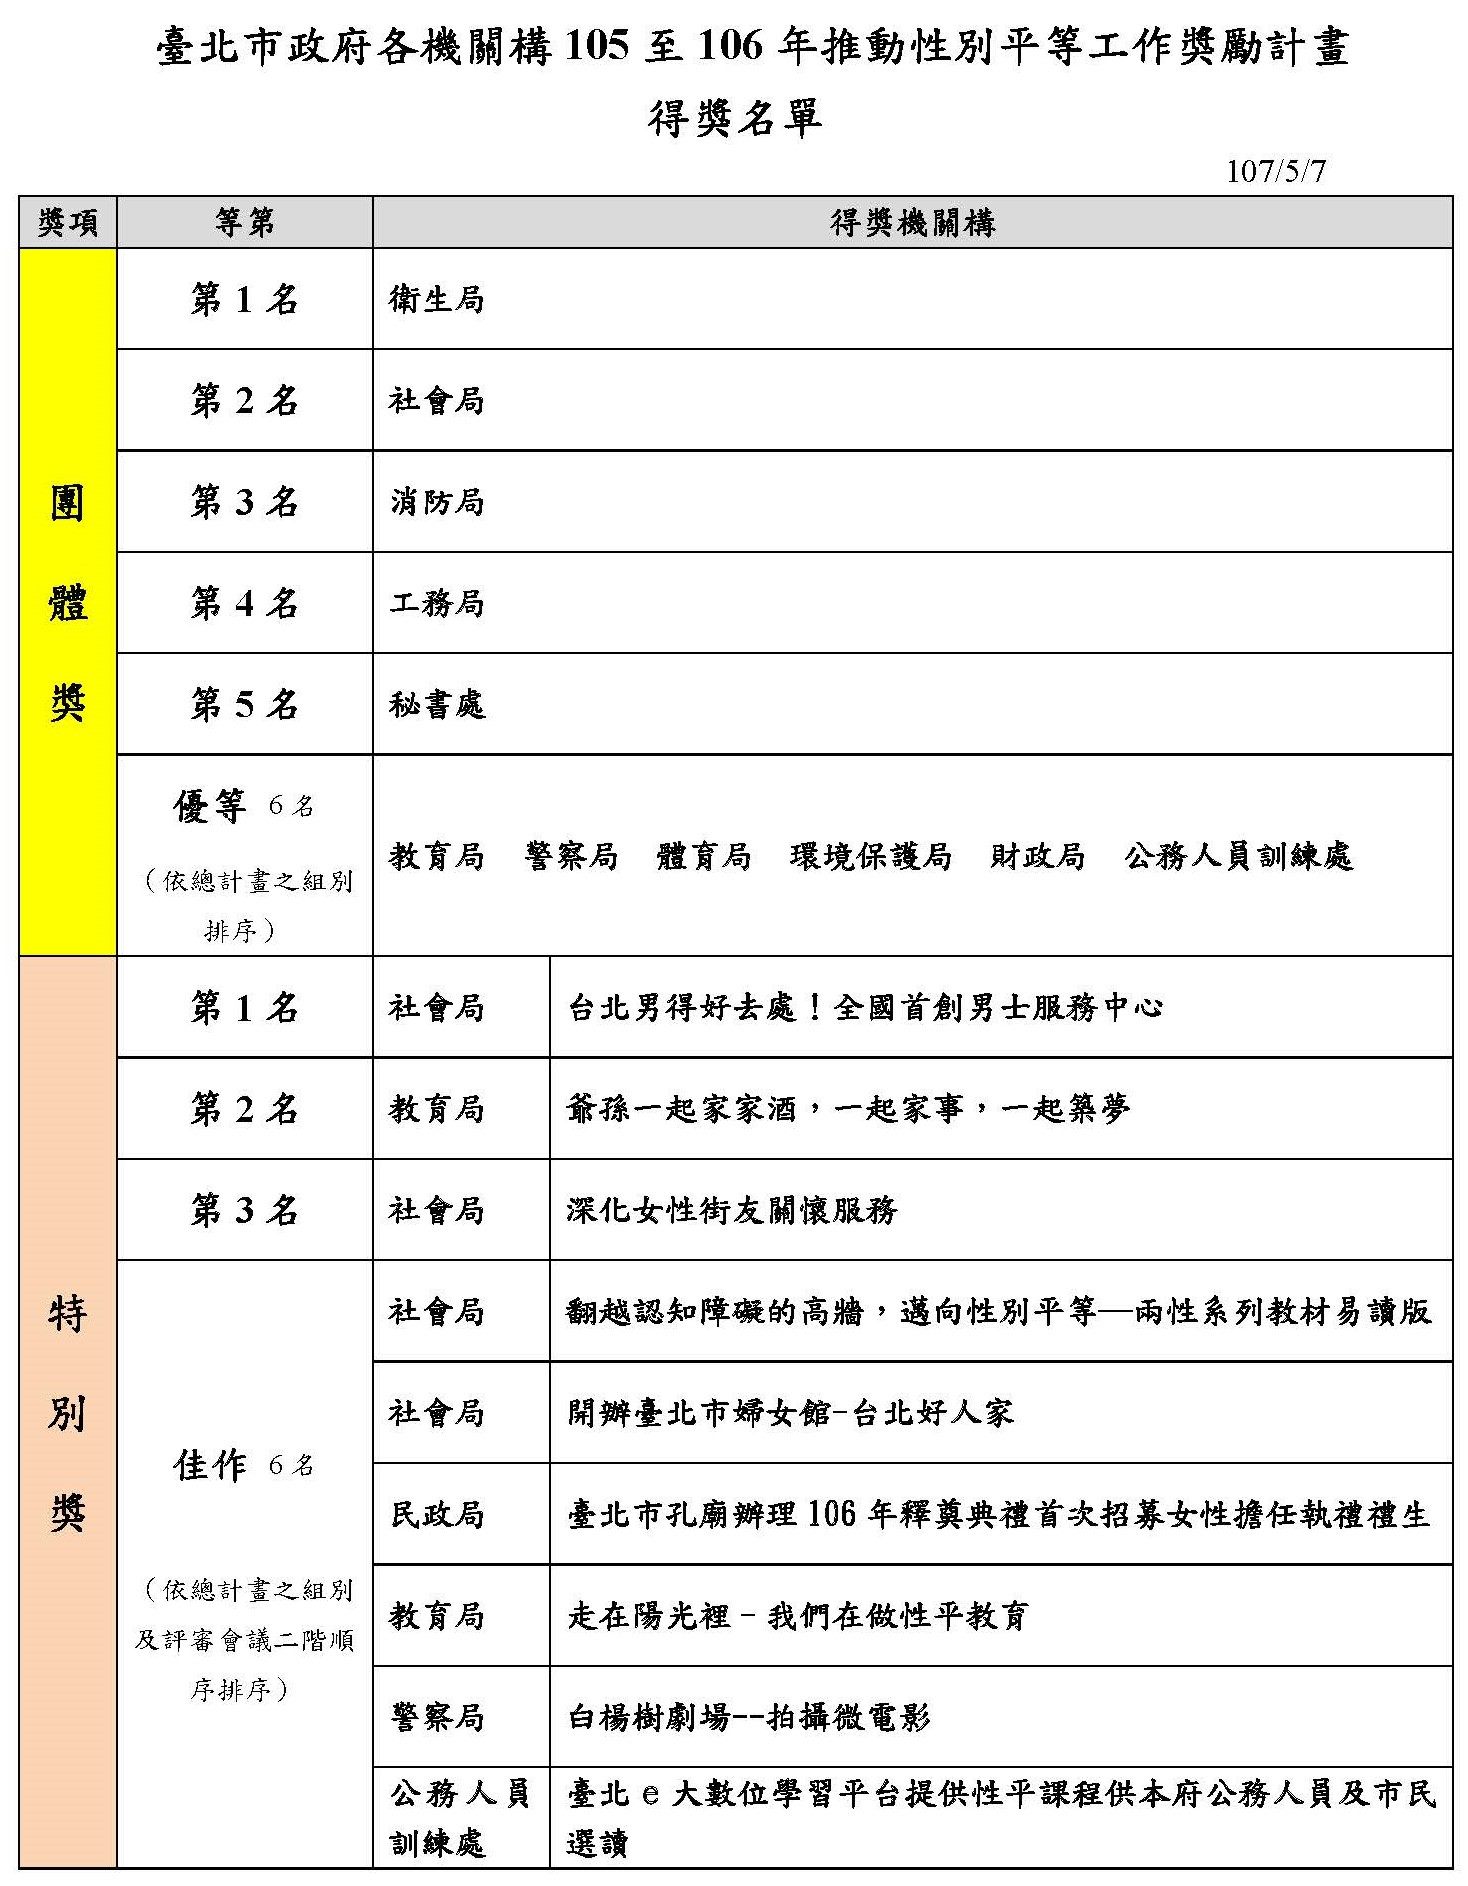 臺北市政府105年至106年推動性平獎勵計畫得獎名單，共有團體獎及特別獎2項類別。